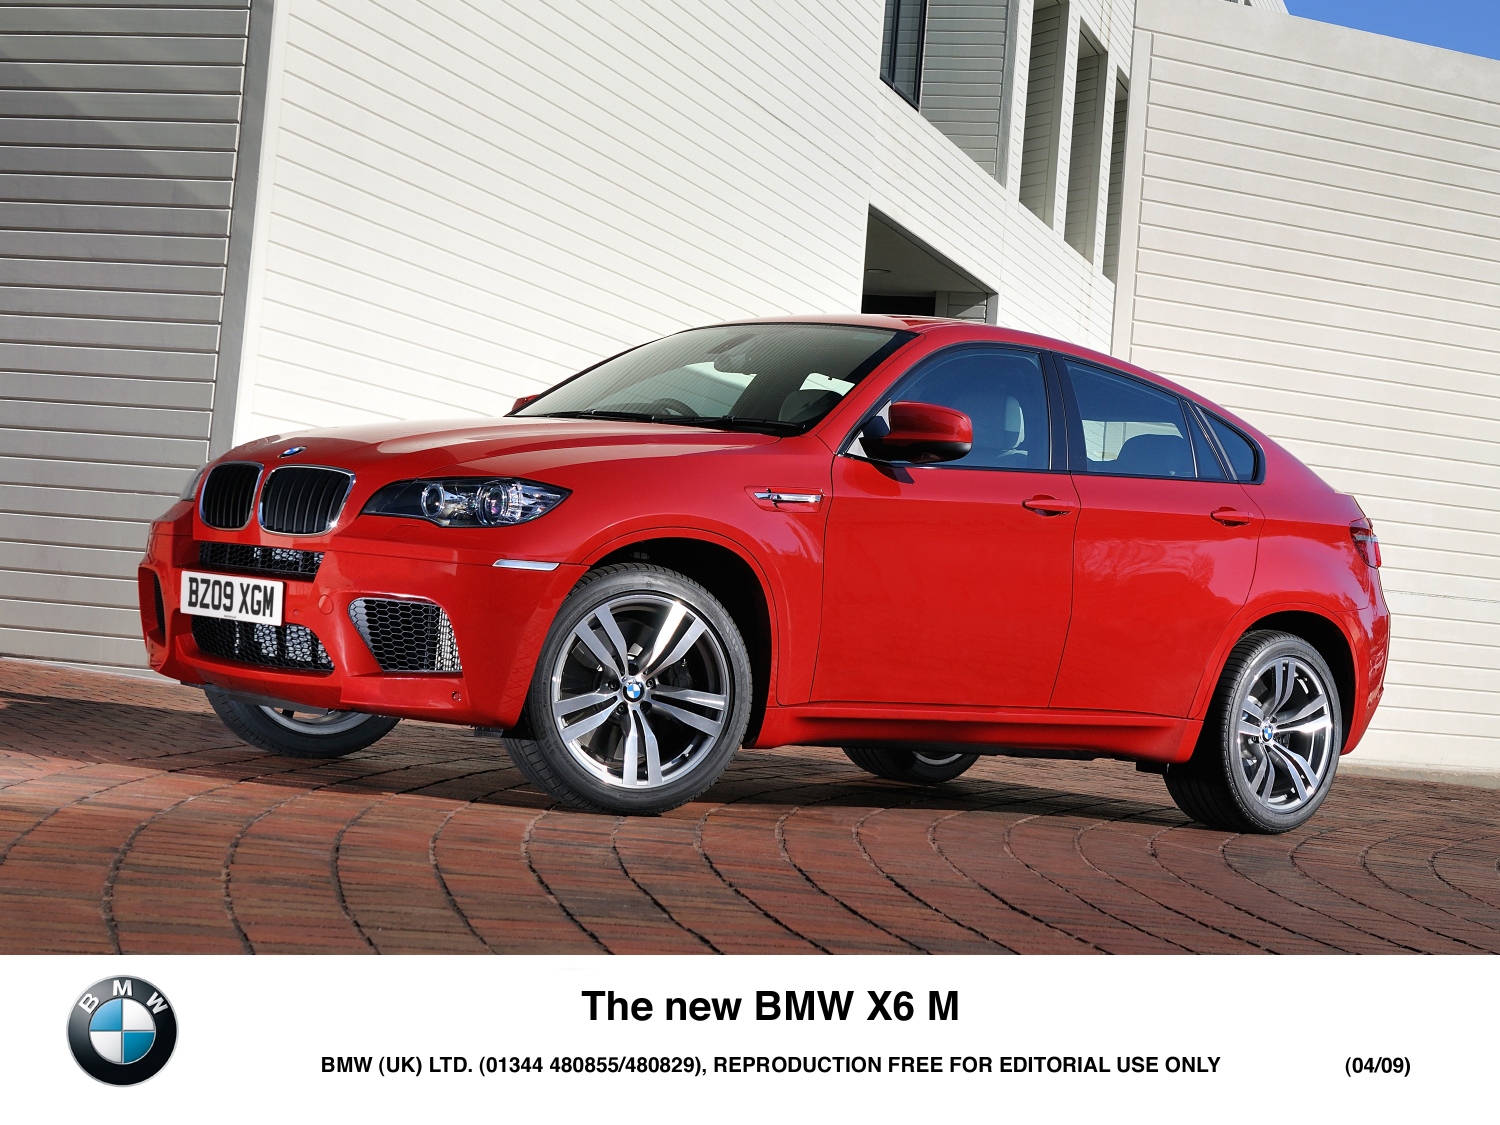 Rendez-vous sur le blog BMW où Horatiu a couvert le X5M et le X6M avec